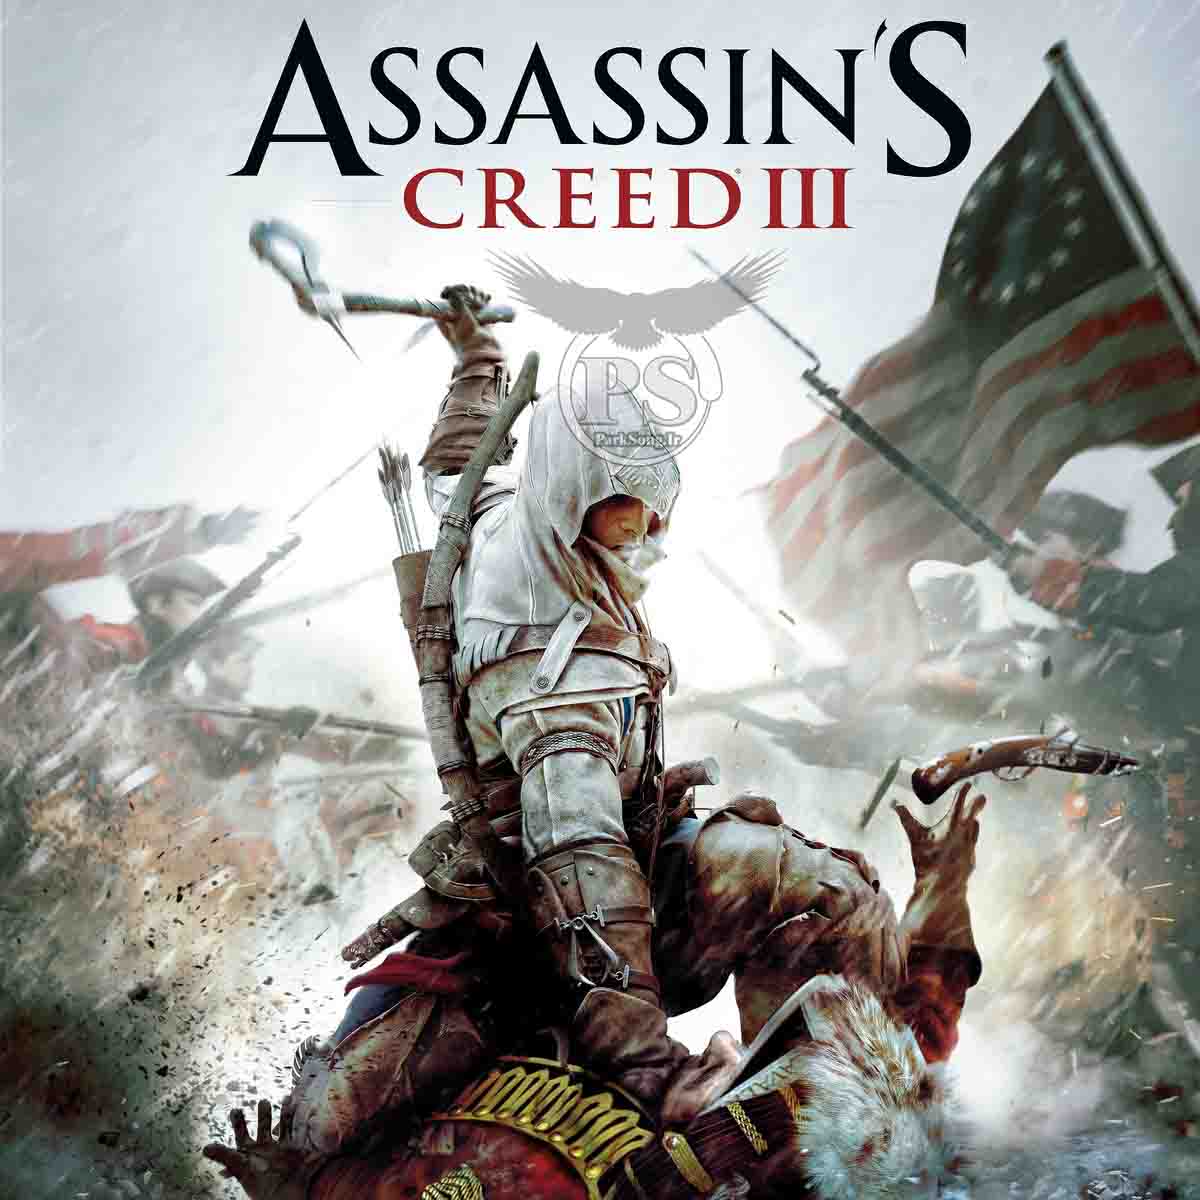 دانلود منتخبی از آلبوم بازی آساسینز کرید 3 (Assassin's Creed III)